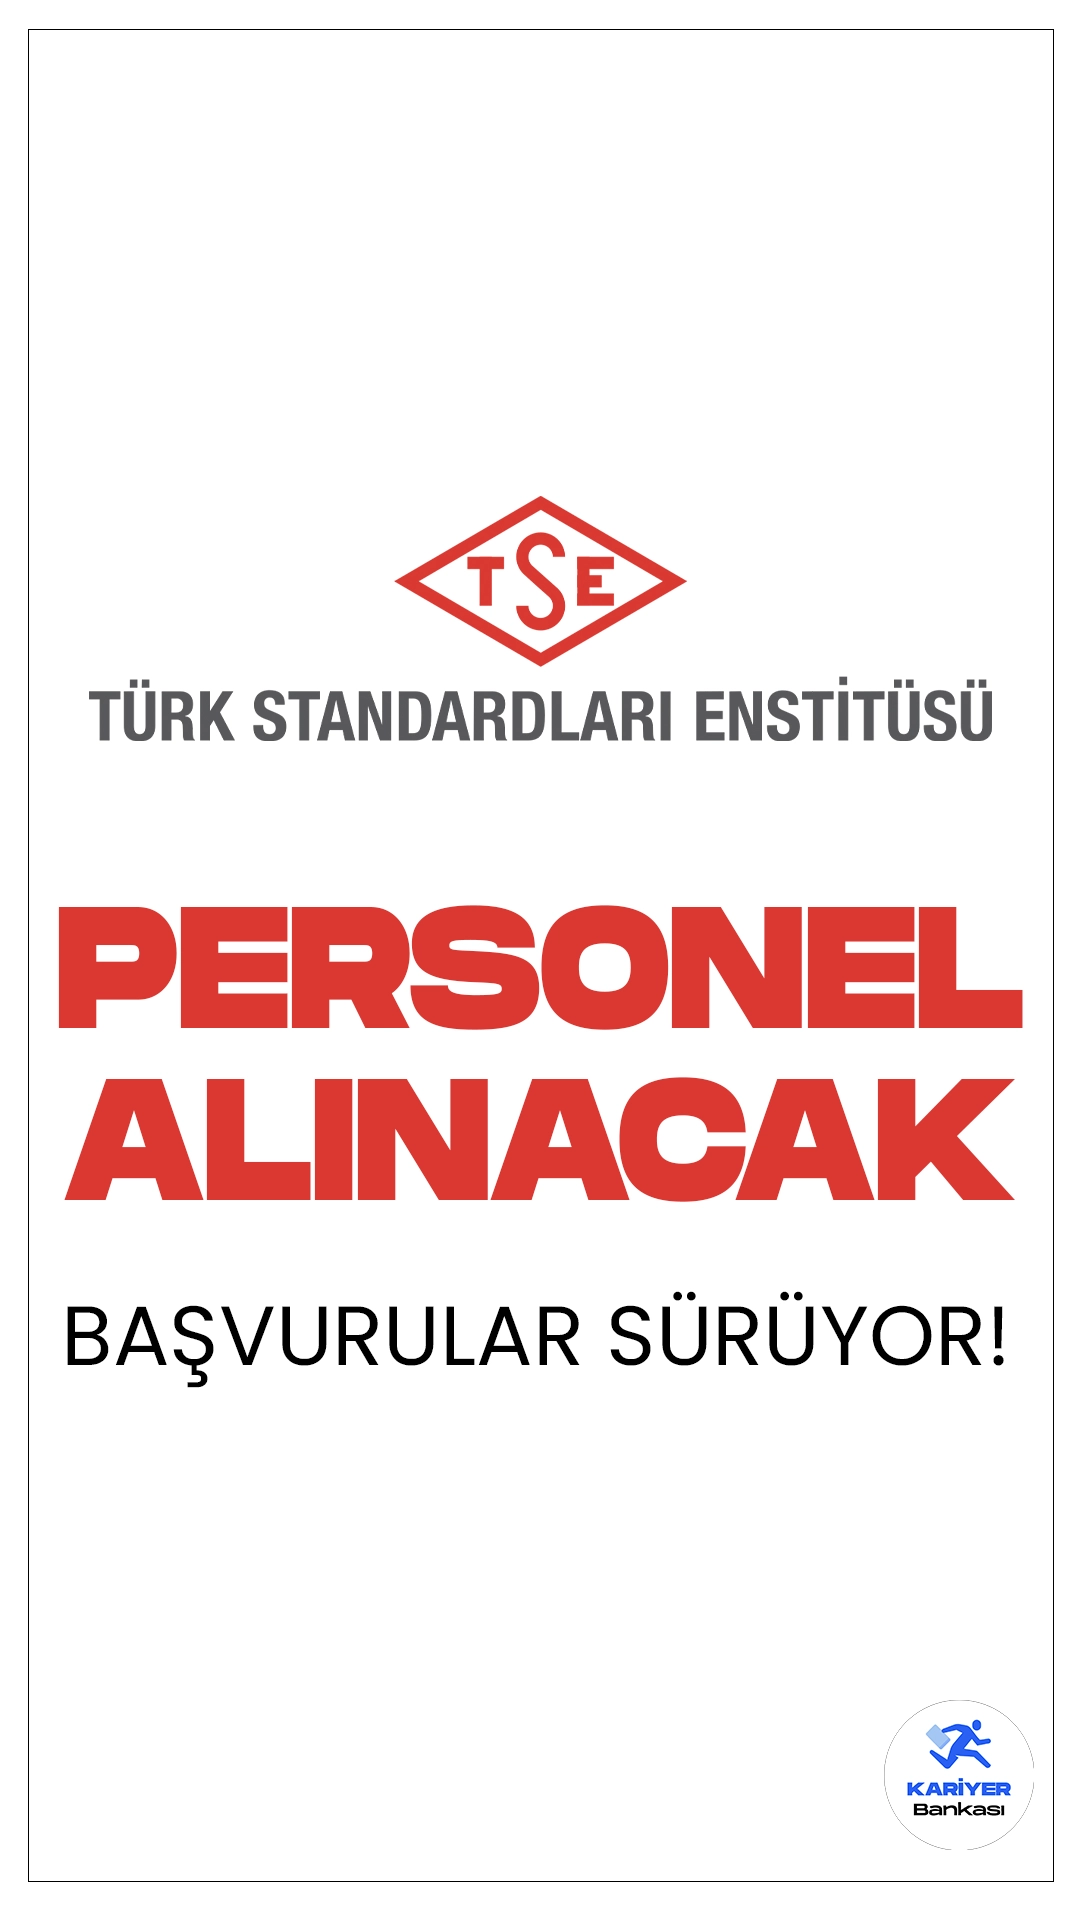 Türk Standartları Enstitüsü (TSE) 34 Personel Alımı Başvuruları Sürüyor.İlgili duyuruya göre, Türk Standartları Enstitüsüne (TSE) mühendis, tekniker, memur koruma ve güvenlik görevlisi ve odacı(hizmetli) pozisyonları için sözleşmeli personel alınacak. Başvuru yapacak adaylarda KPSS'den en az 70 puan alma şartı aranırken, adayların belirtilen genel ve özel şartları taşıması gerektiği kaydedildi.